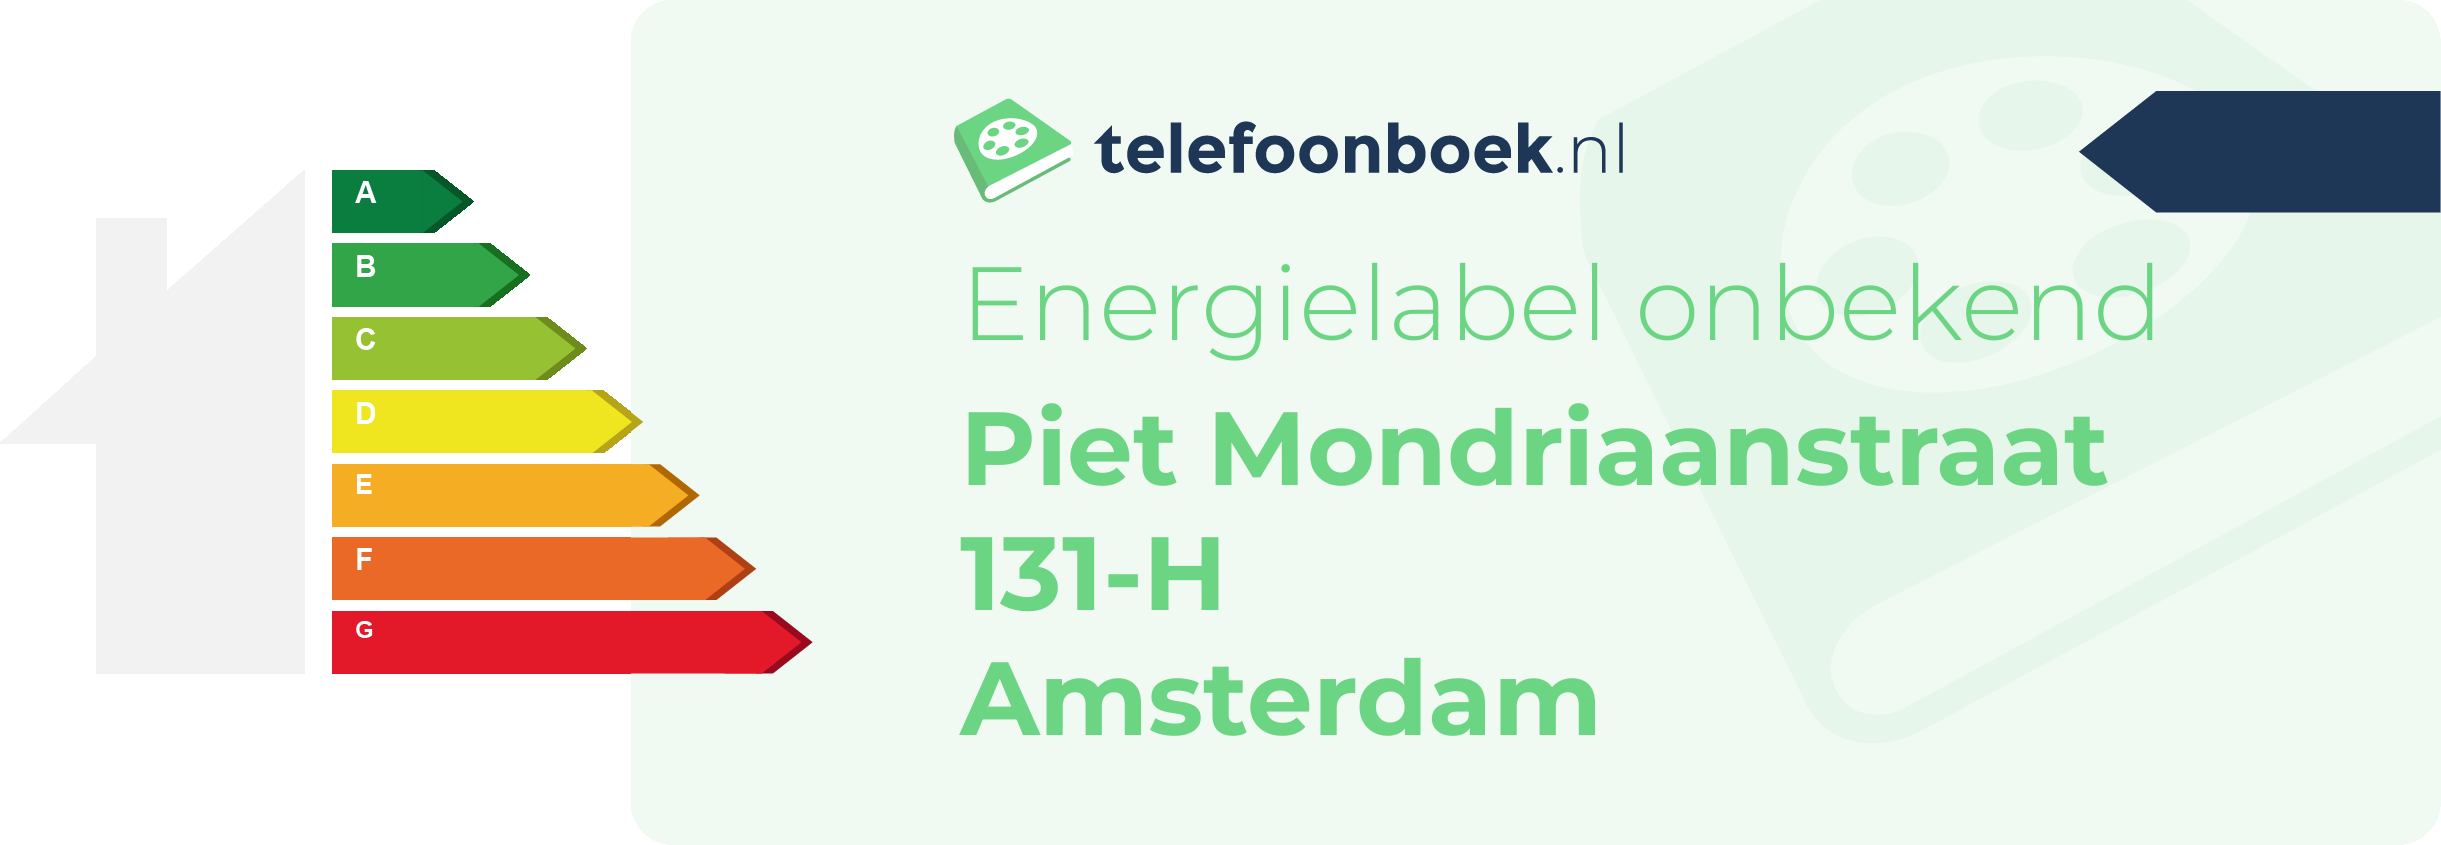 Energielabel Piet Mondriaanstraat 131-H Amsterdam